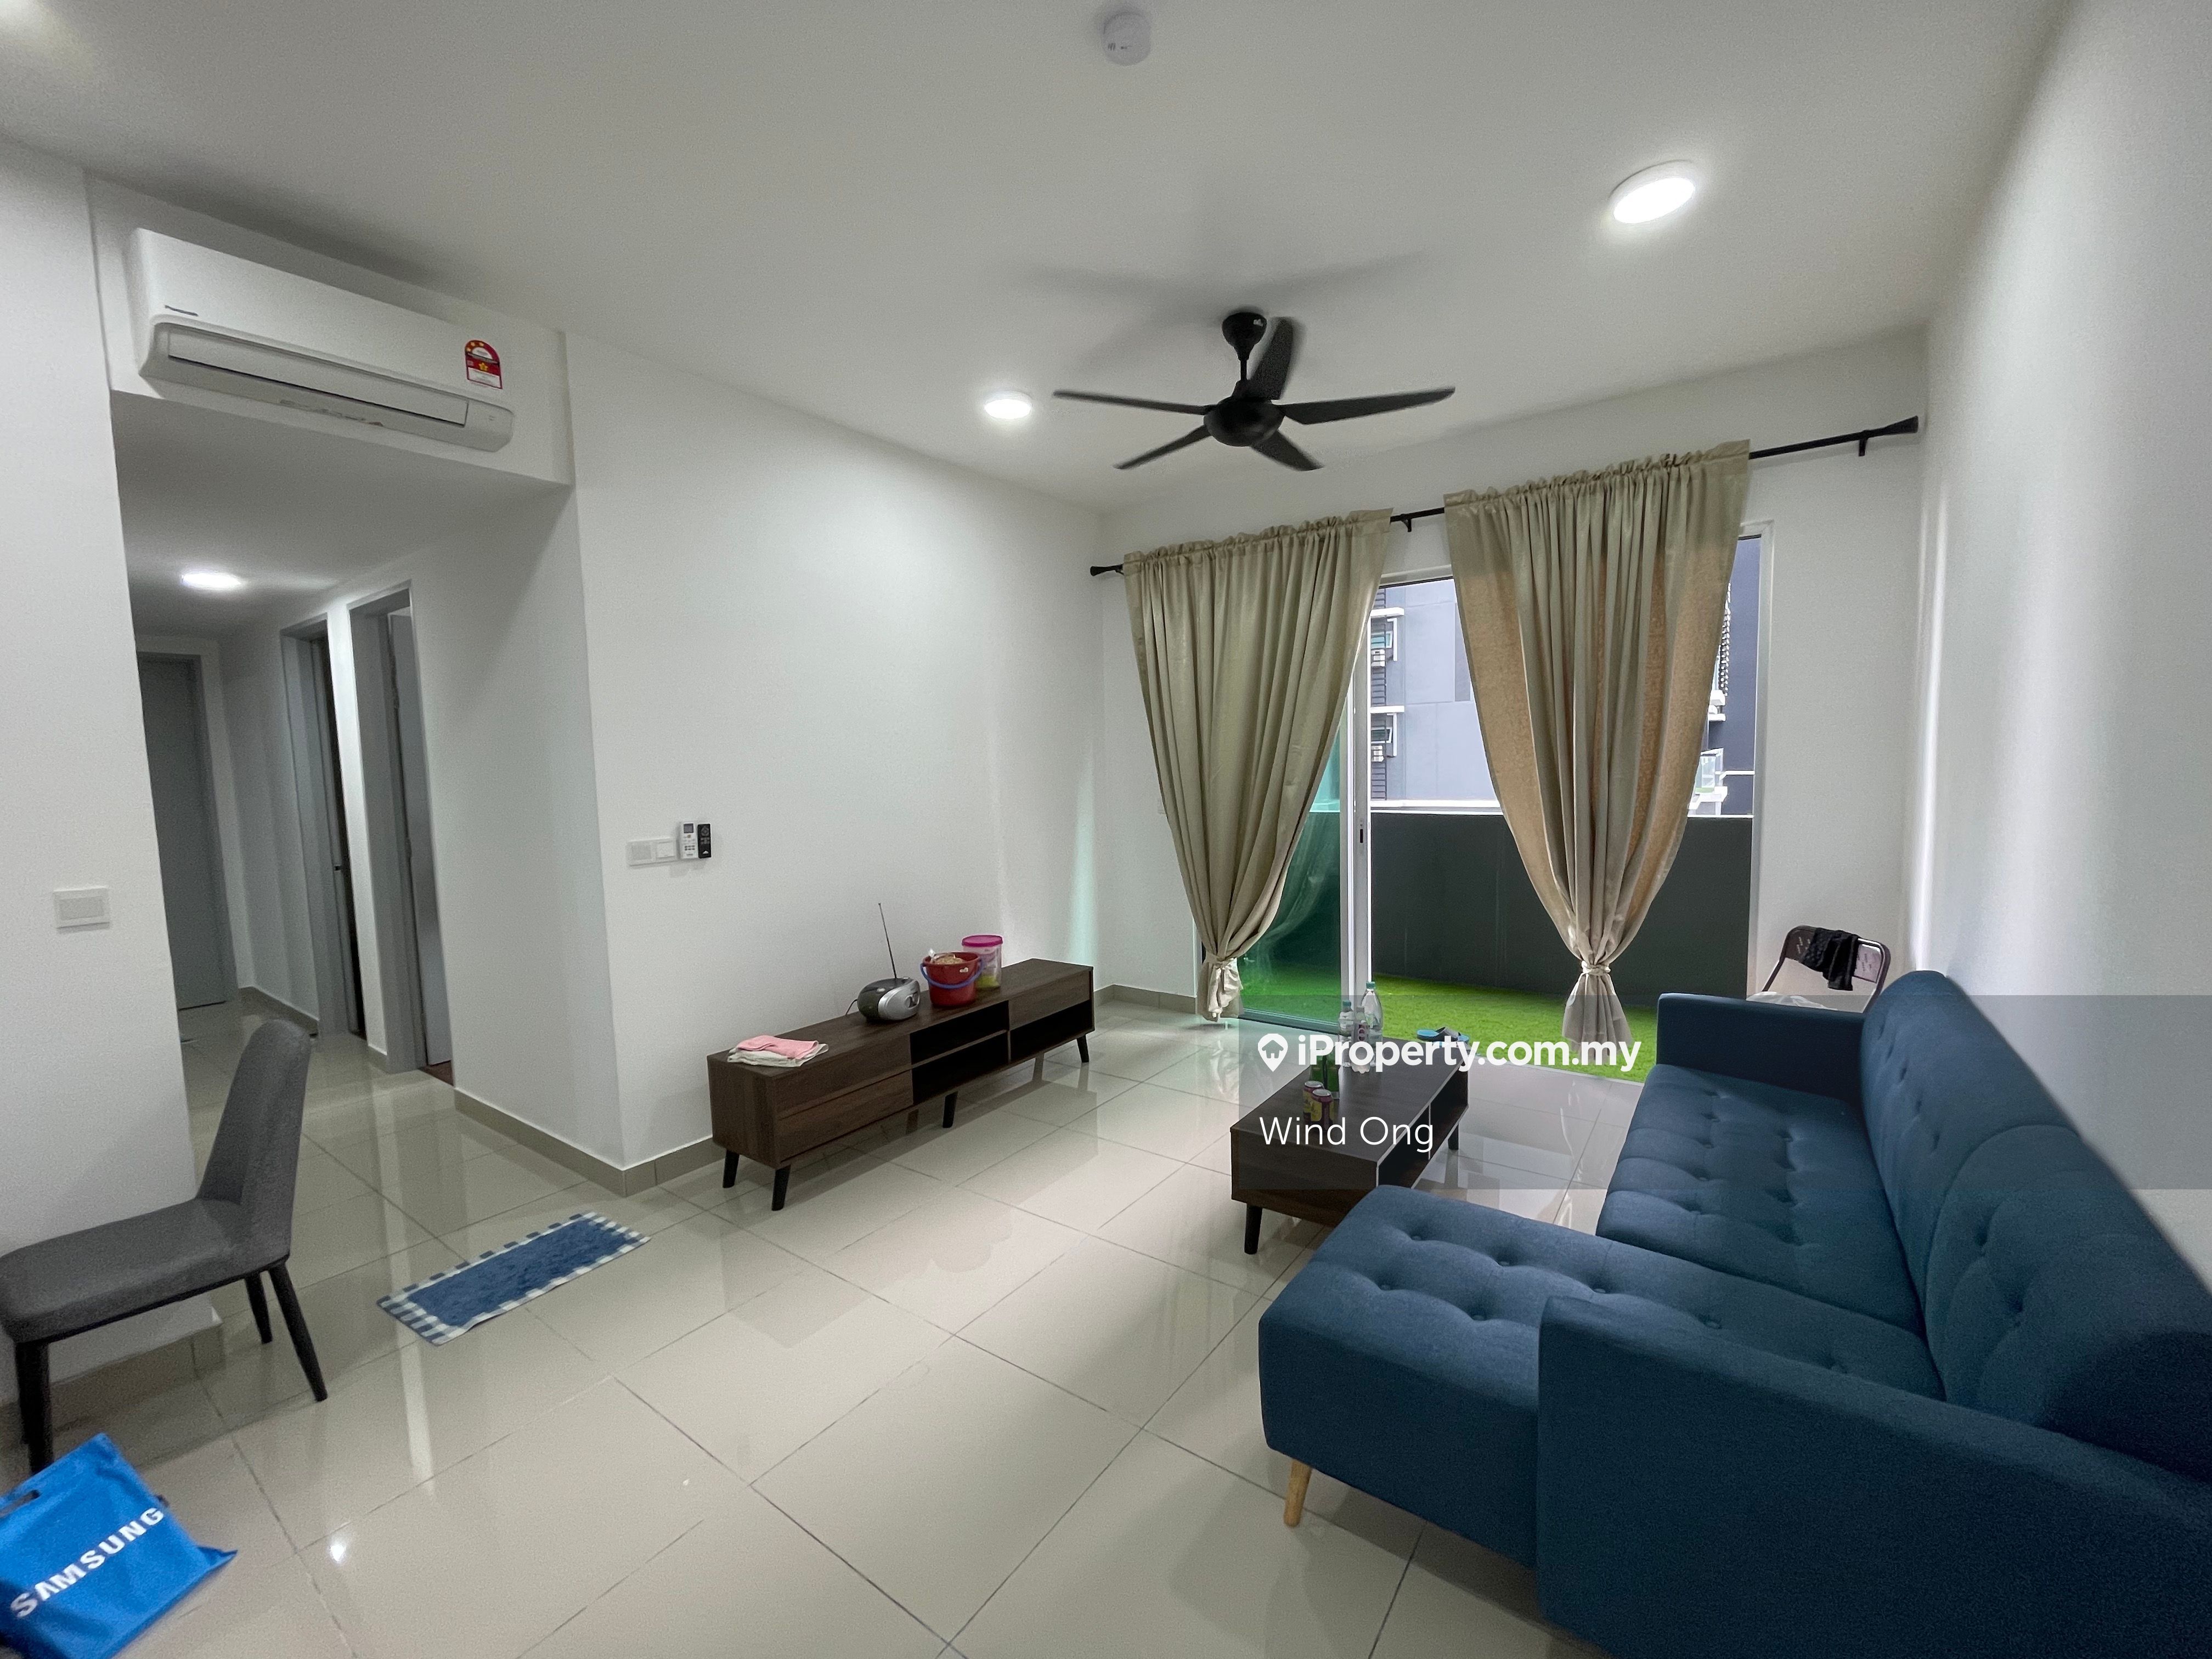 Gaya Resort Homes, Bukit Rimau, Shah Alam for rent - RM750 | iProperty ...